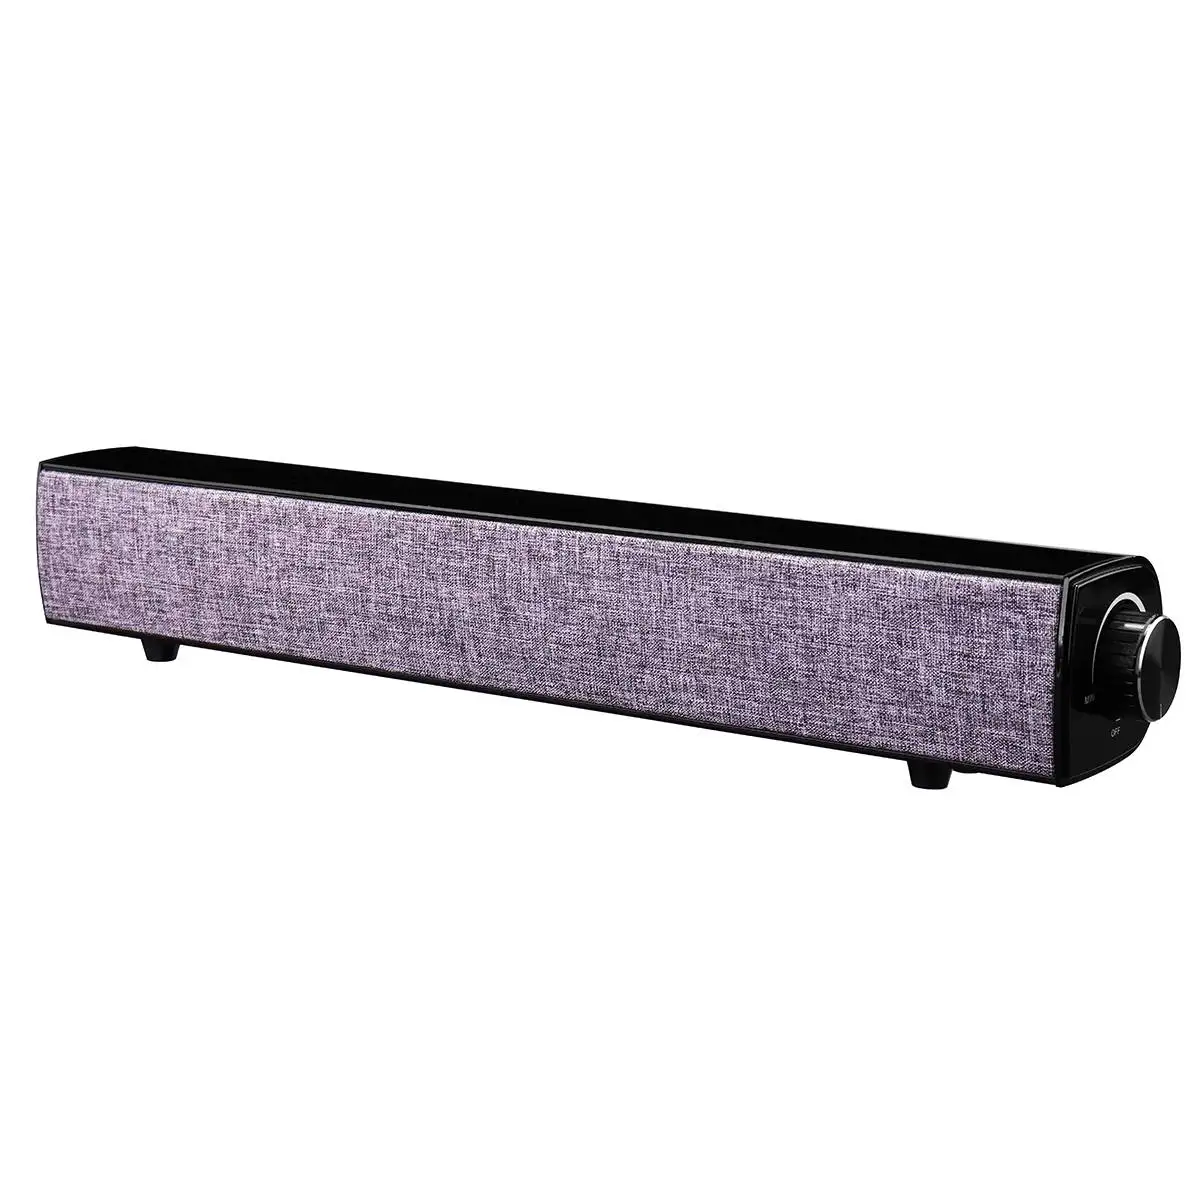 20 Вт bluetooth динамик Саундбар 4000 мАч беспроводной бас стерео сабвуфер USB Aux 3,5 мм для домашнего кинотеатра смартфон ПК - Цвет: Purple Gray